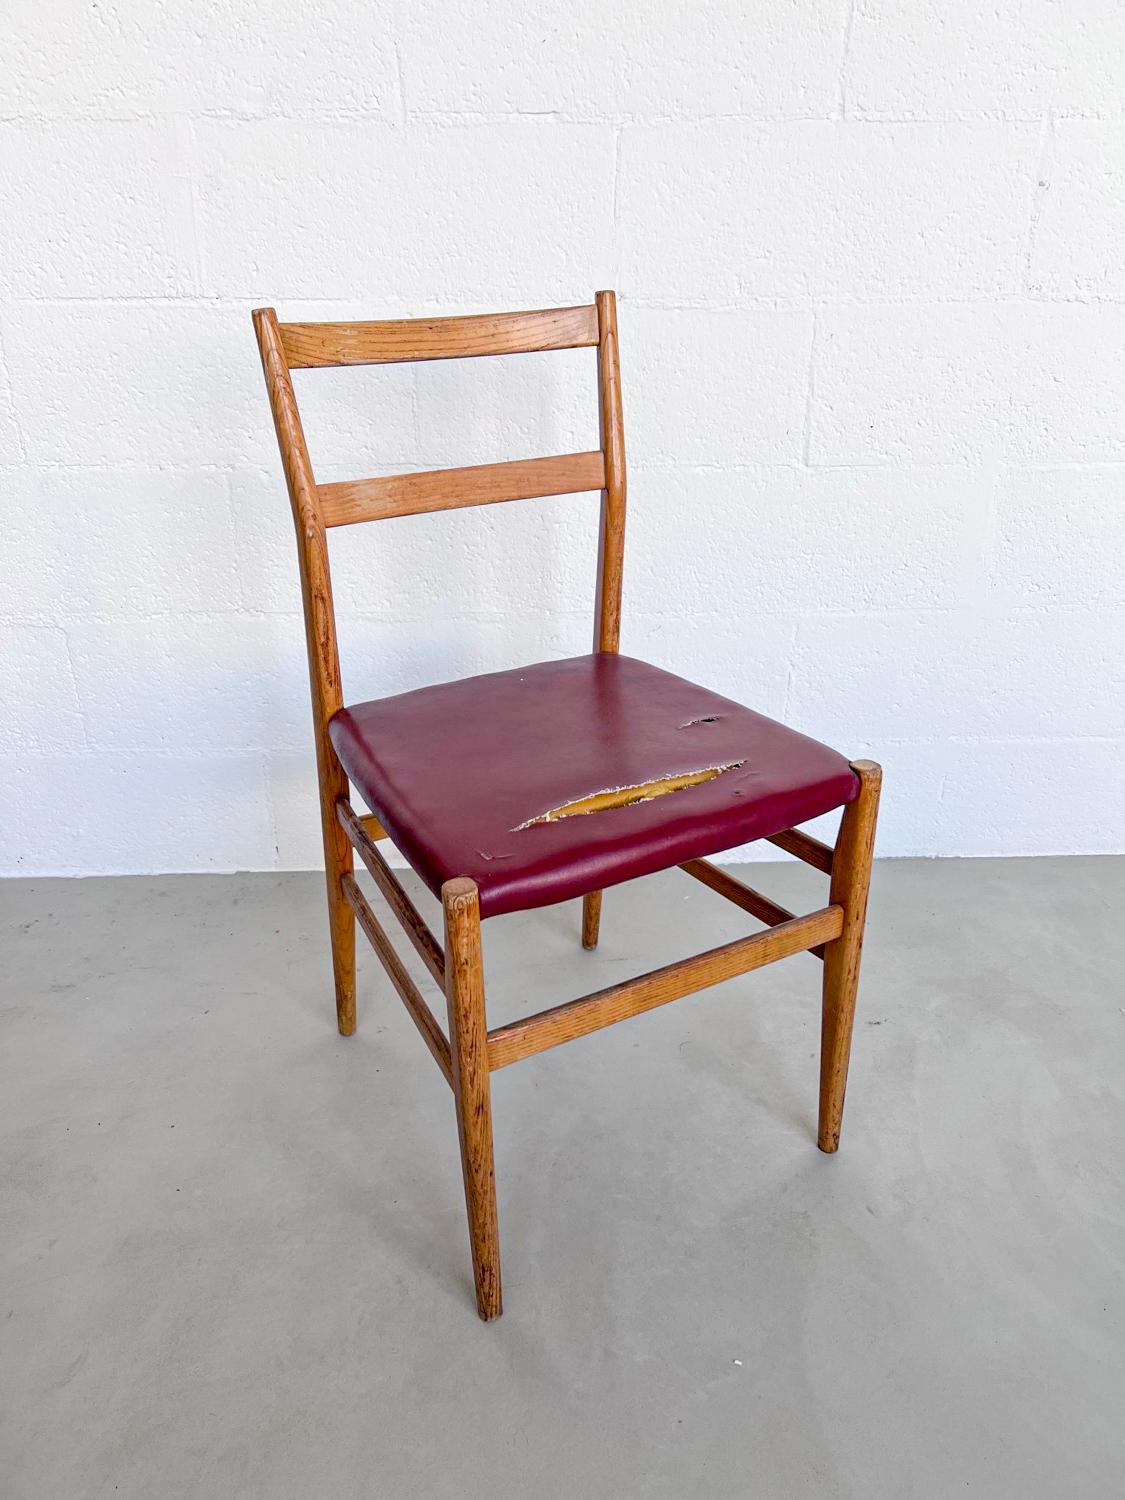 4 chaises italiennes vintage de collection de Gio Ponti

Giò Ponti n'a plus besoin d'être présenté : Il est sans doute la personnalité la plus influente du design et de l'architecture italiens depuis près de trois décennies, des années cinquante aux